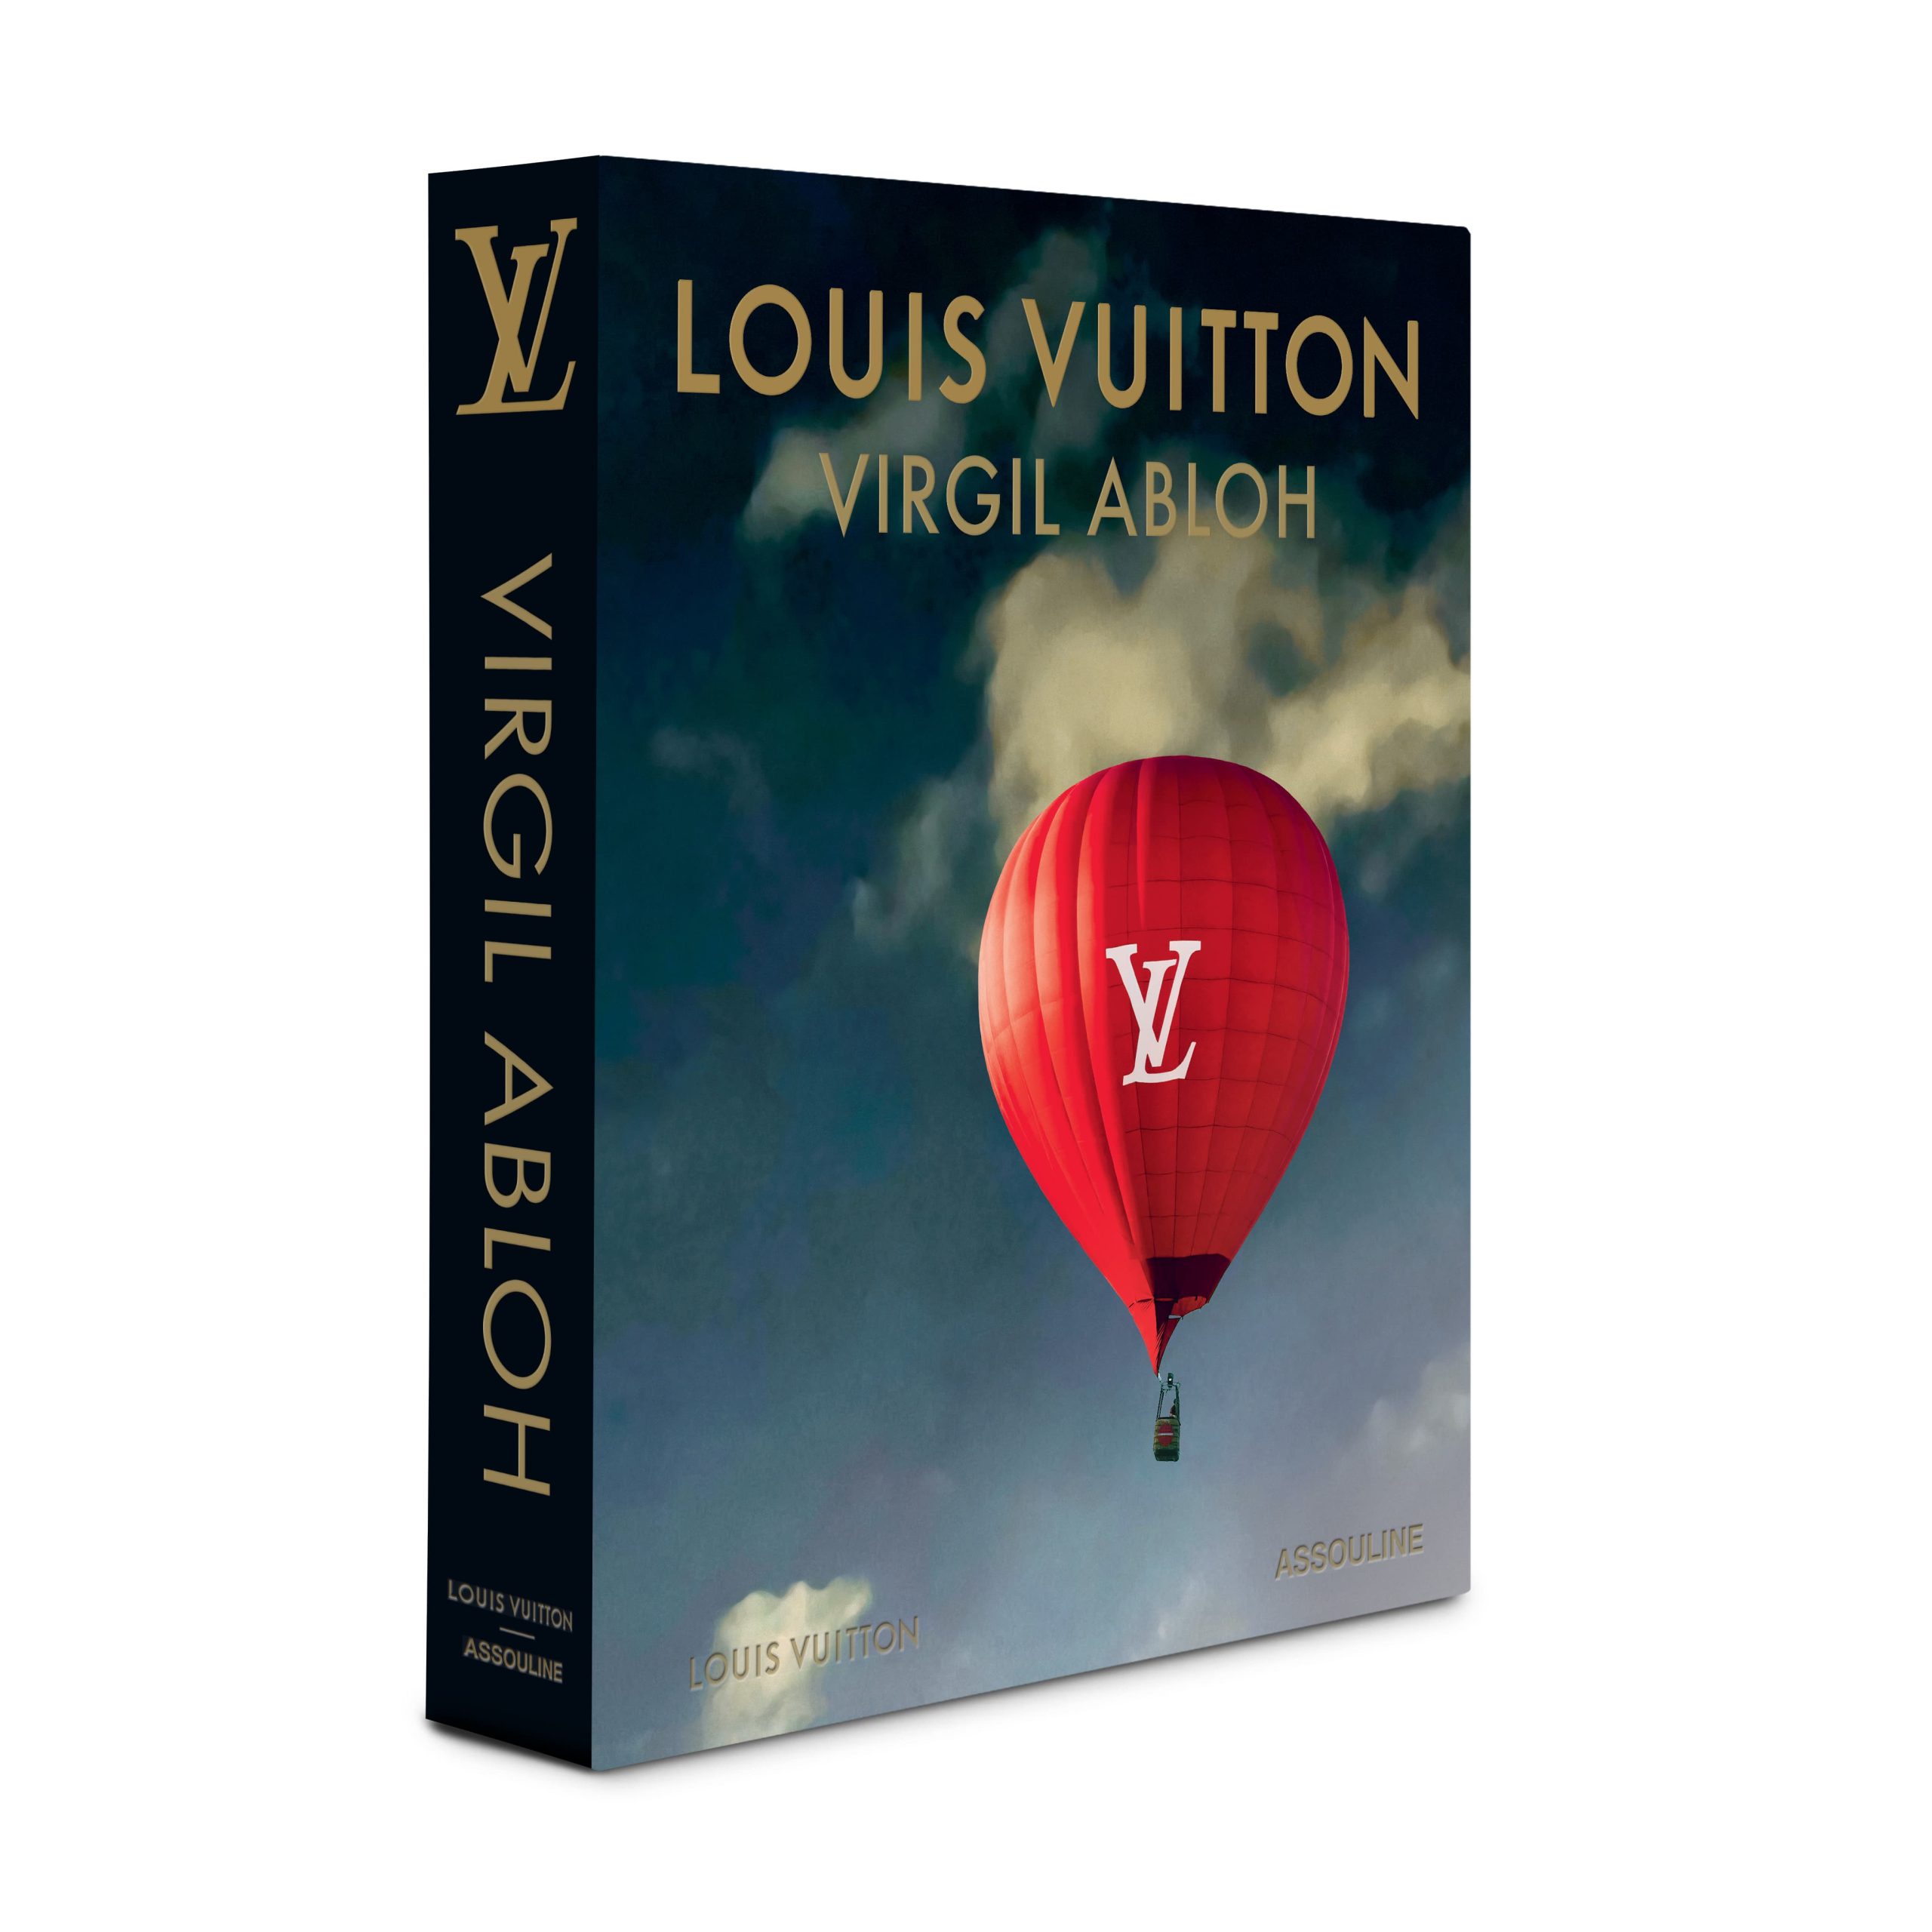 Louis Vuitton Launches 'Louis Vuitton: Virgil Abloh' Book